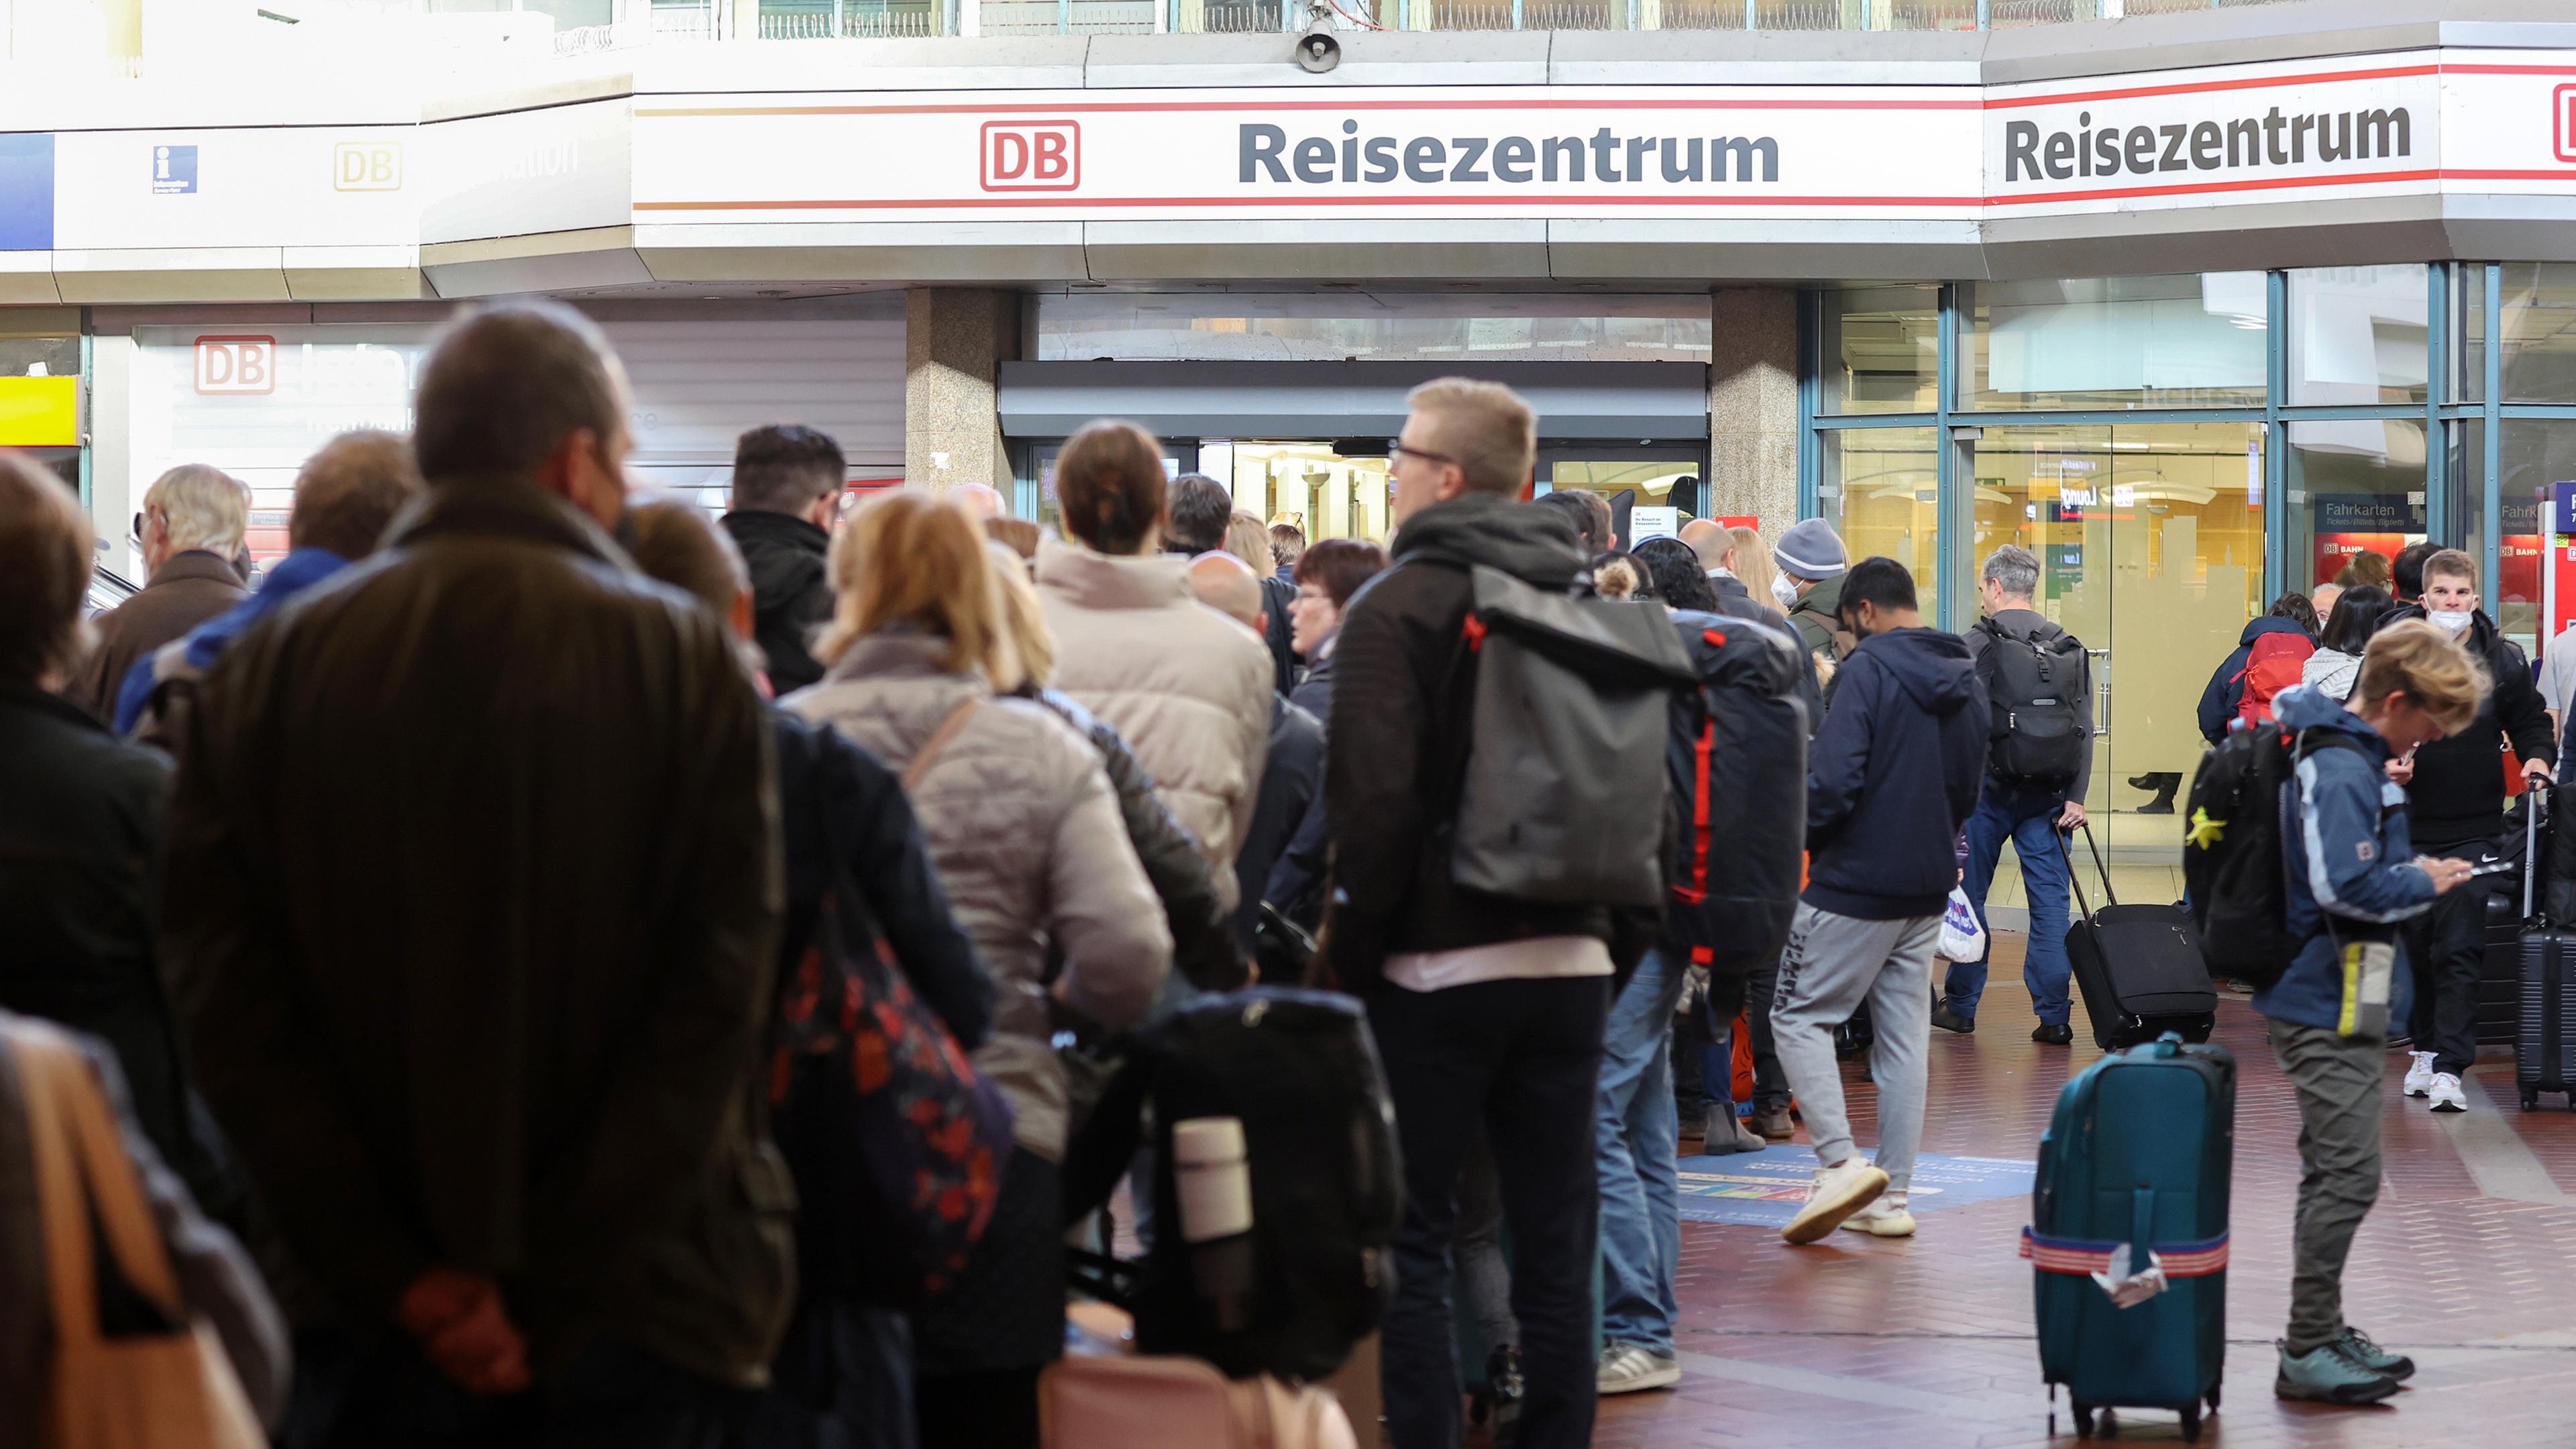 Hamburg: Reisende stehen in langen Schlangen im Hauptbahnhof Hamburg am Reisezentrum an, nachdem der Fernverkehr in Norddeutschland zum Erliegen gekommen ist.